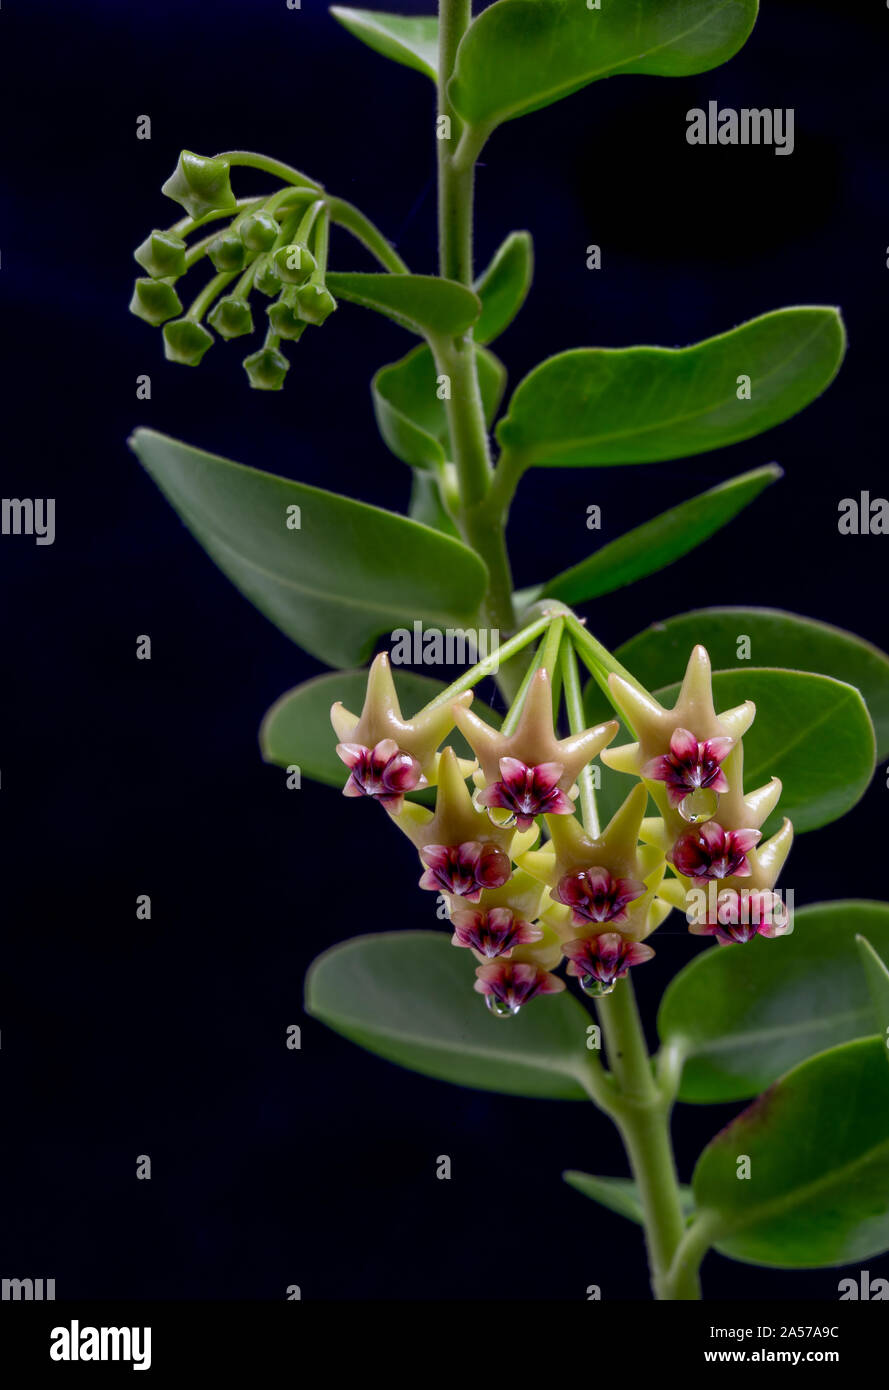 Cumming's Wax Flower, Hoya cummingiana, from the Philippines Stock Photo